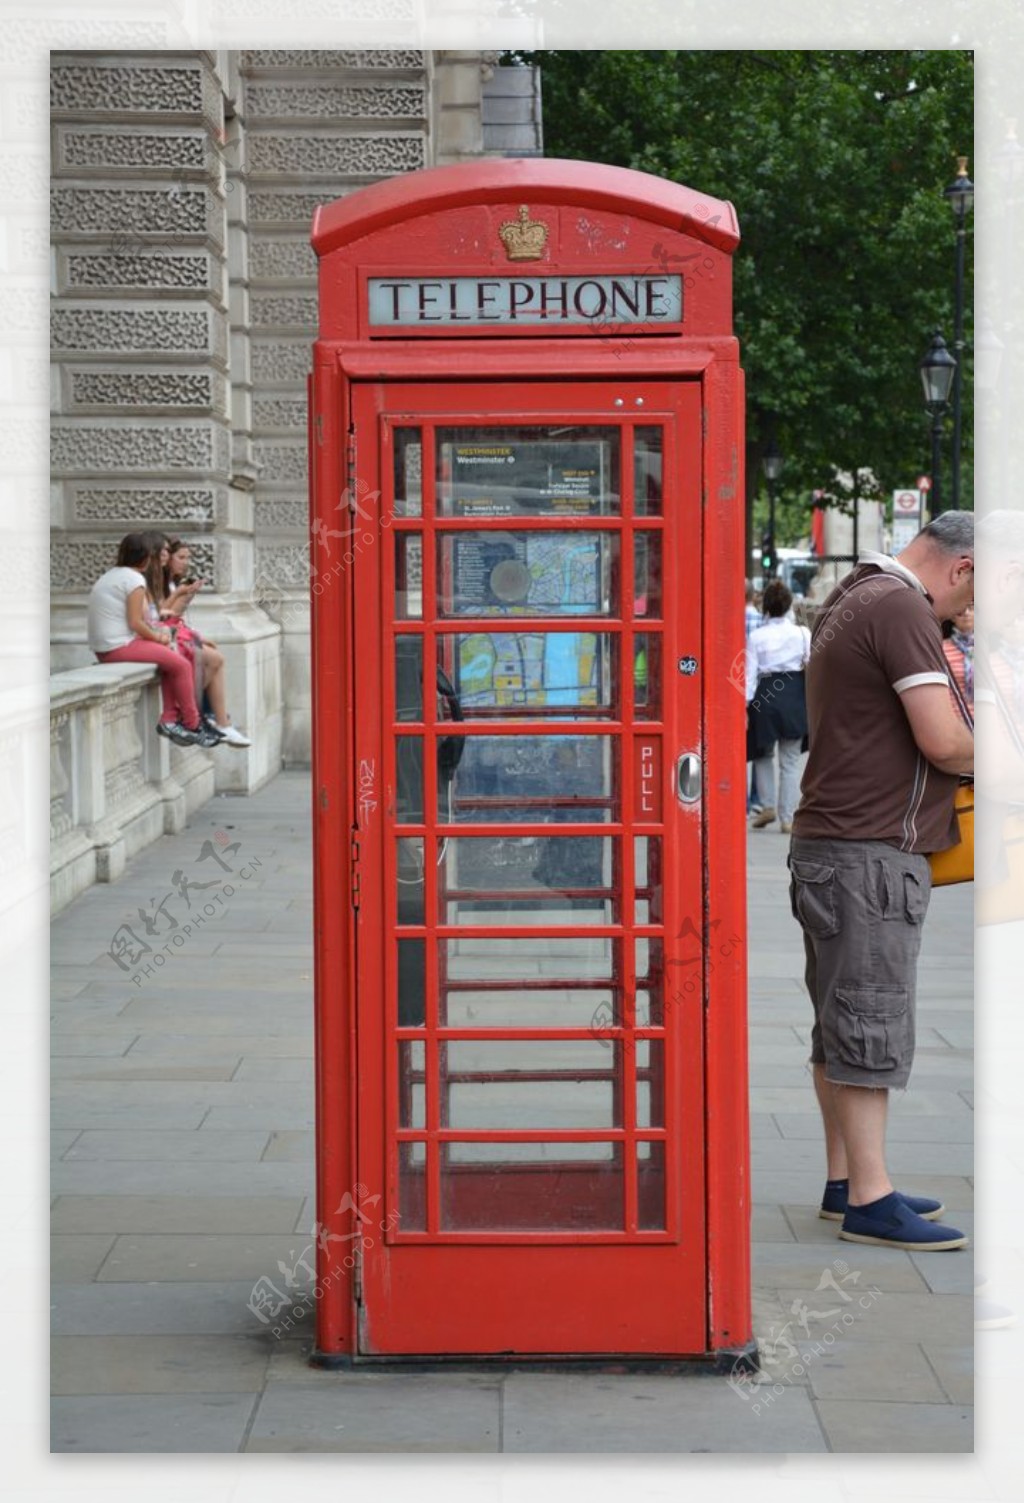 电话亭红色电话亭